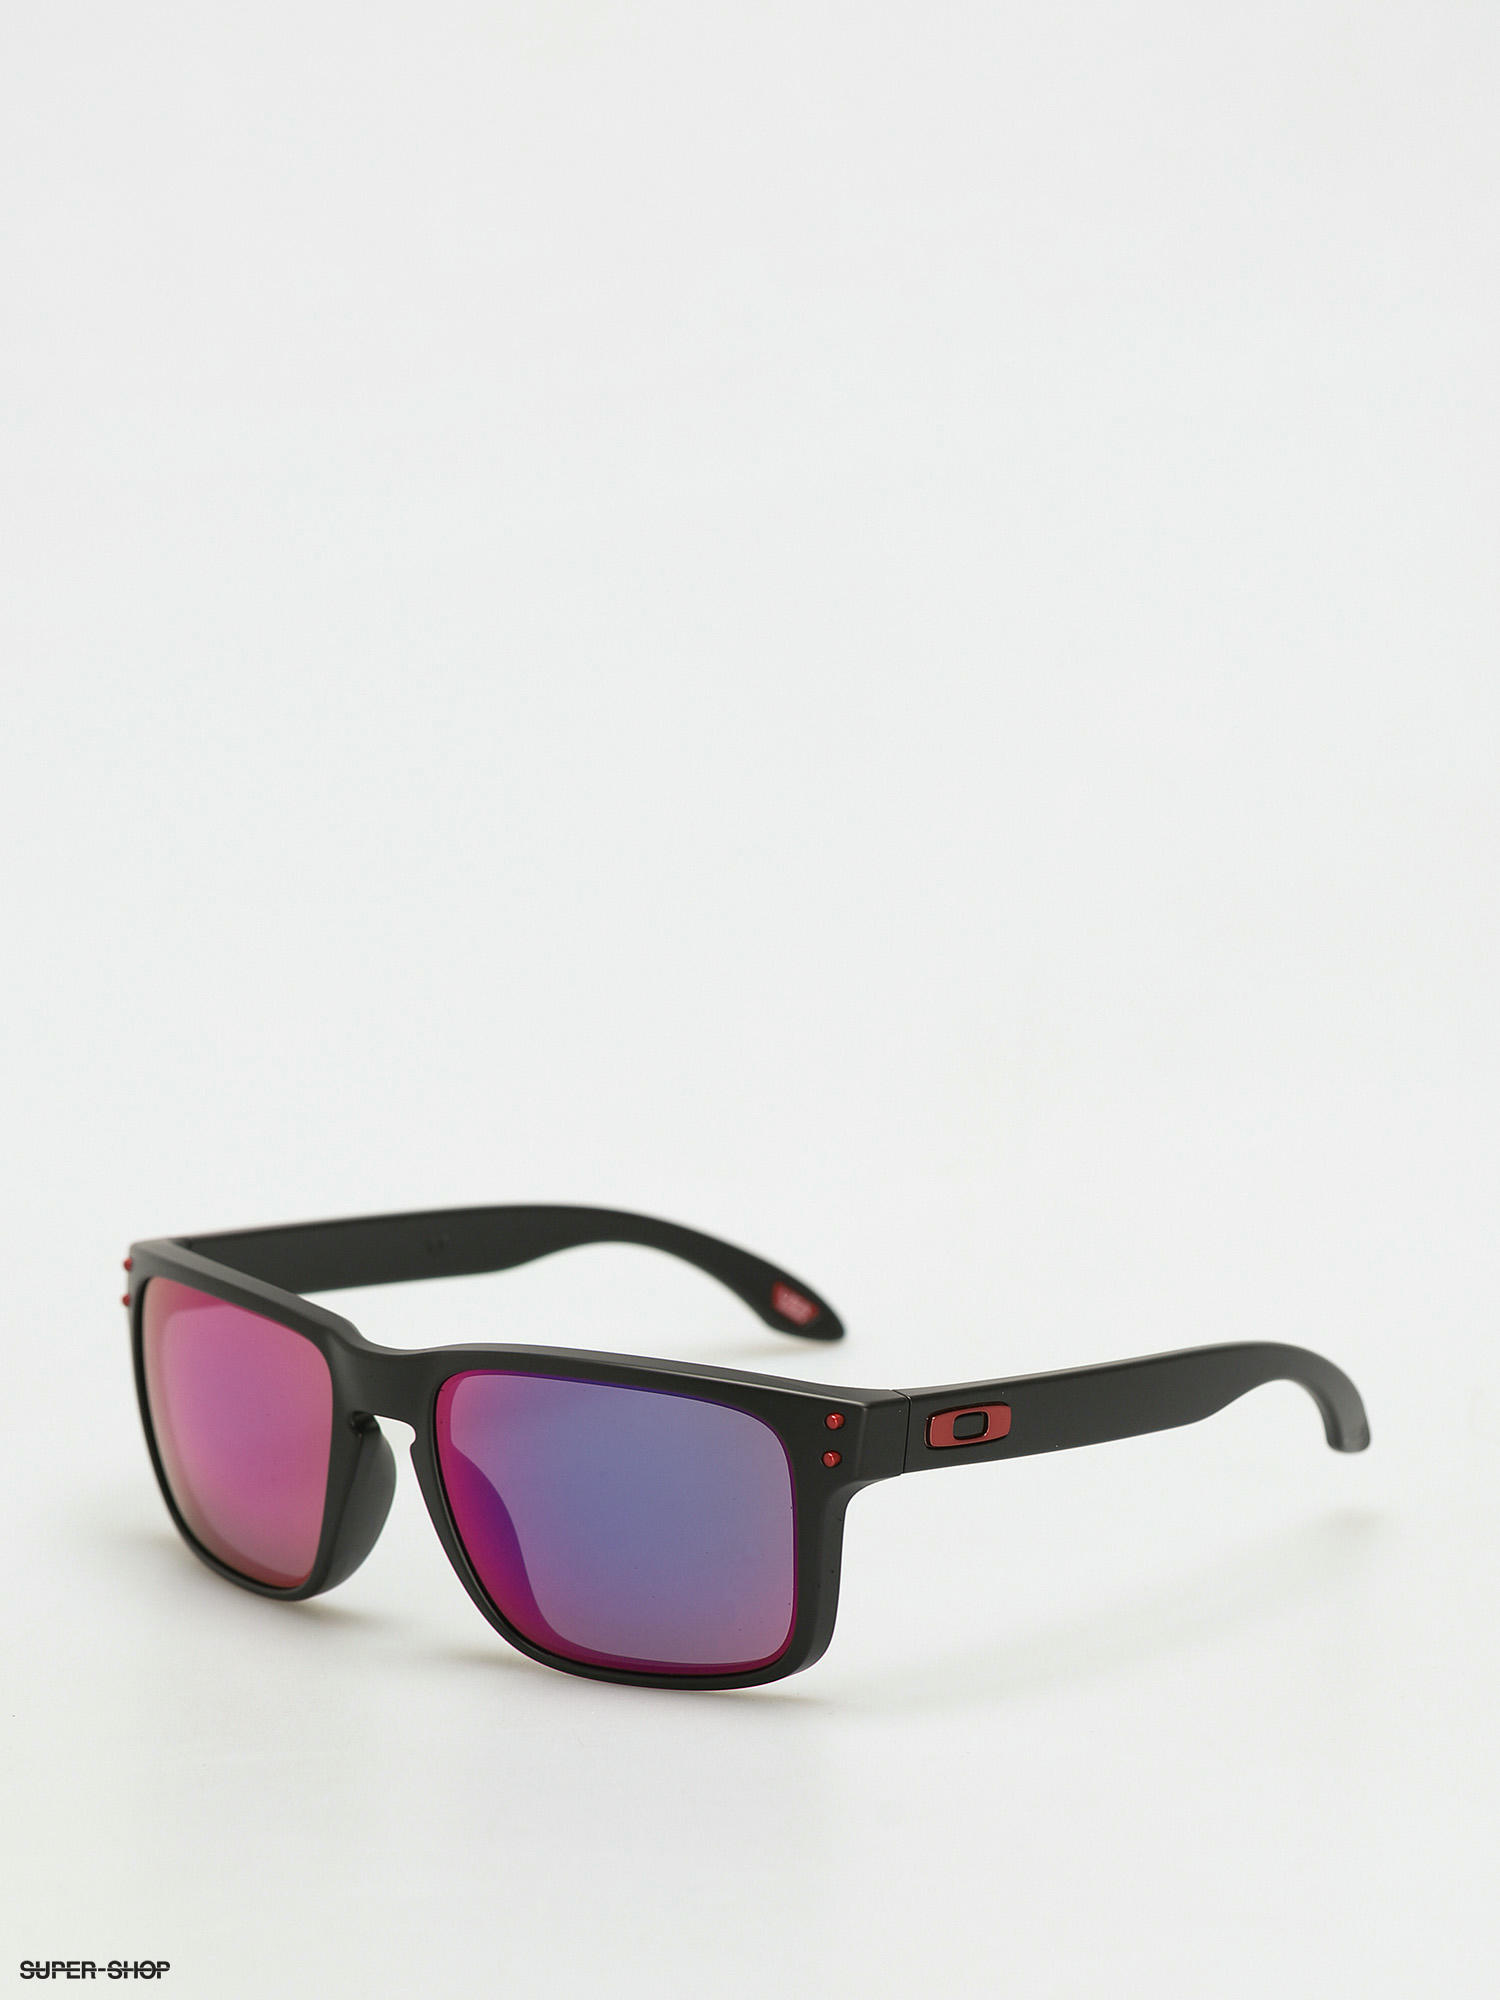 Oakley sunglasses oo9236-02 black frame red lens VALVE never worn! – CDE